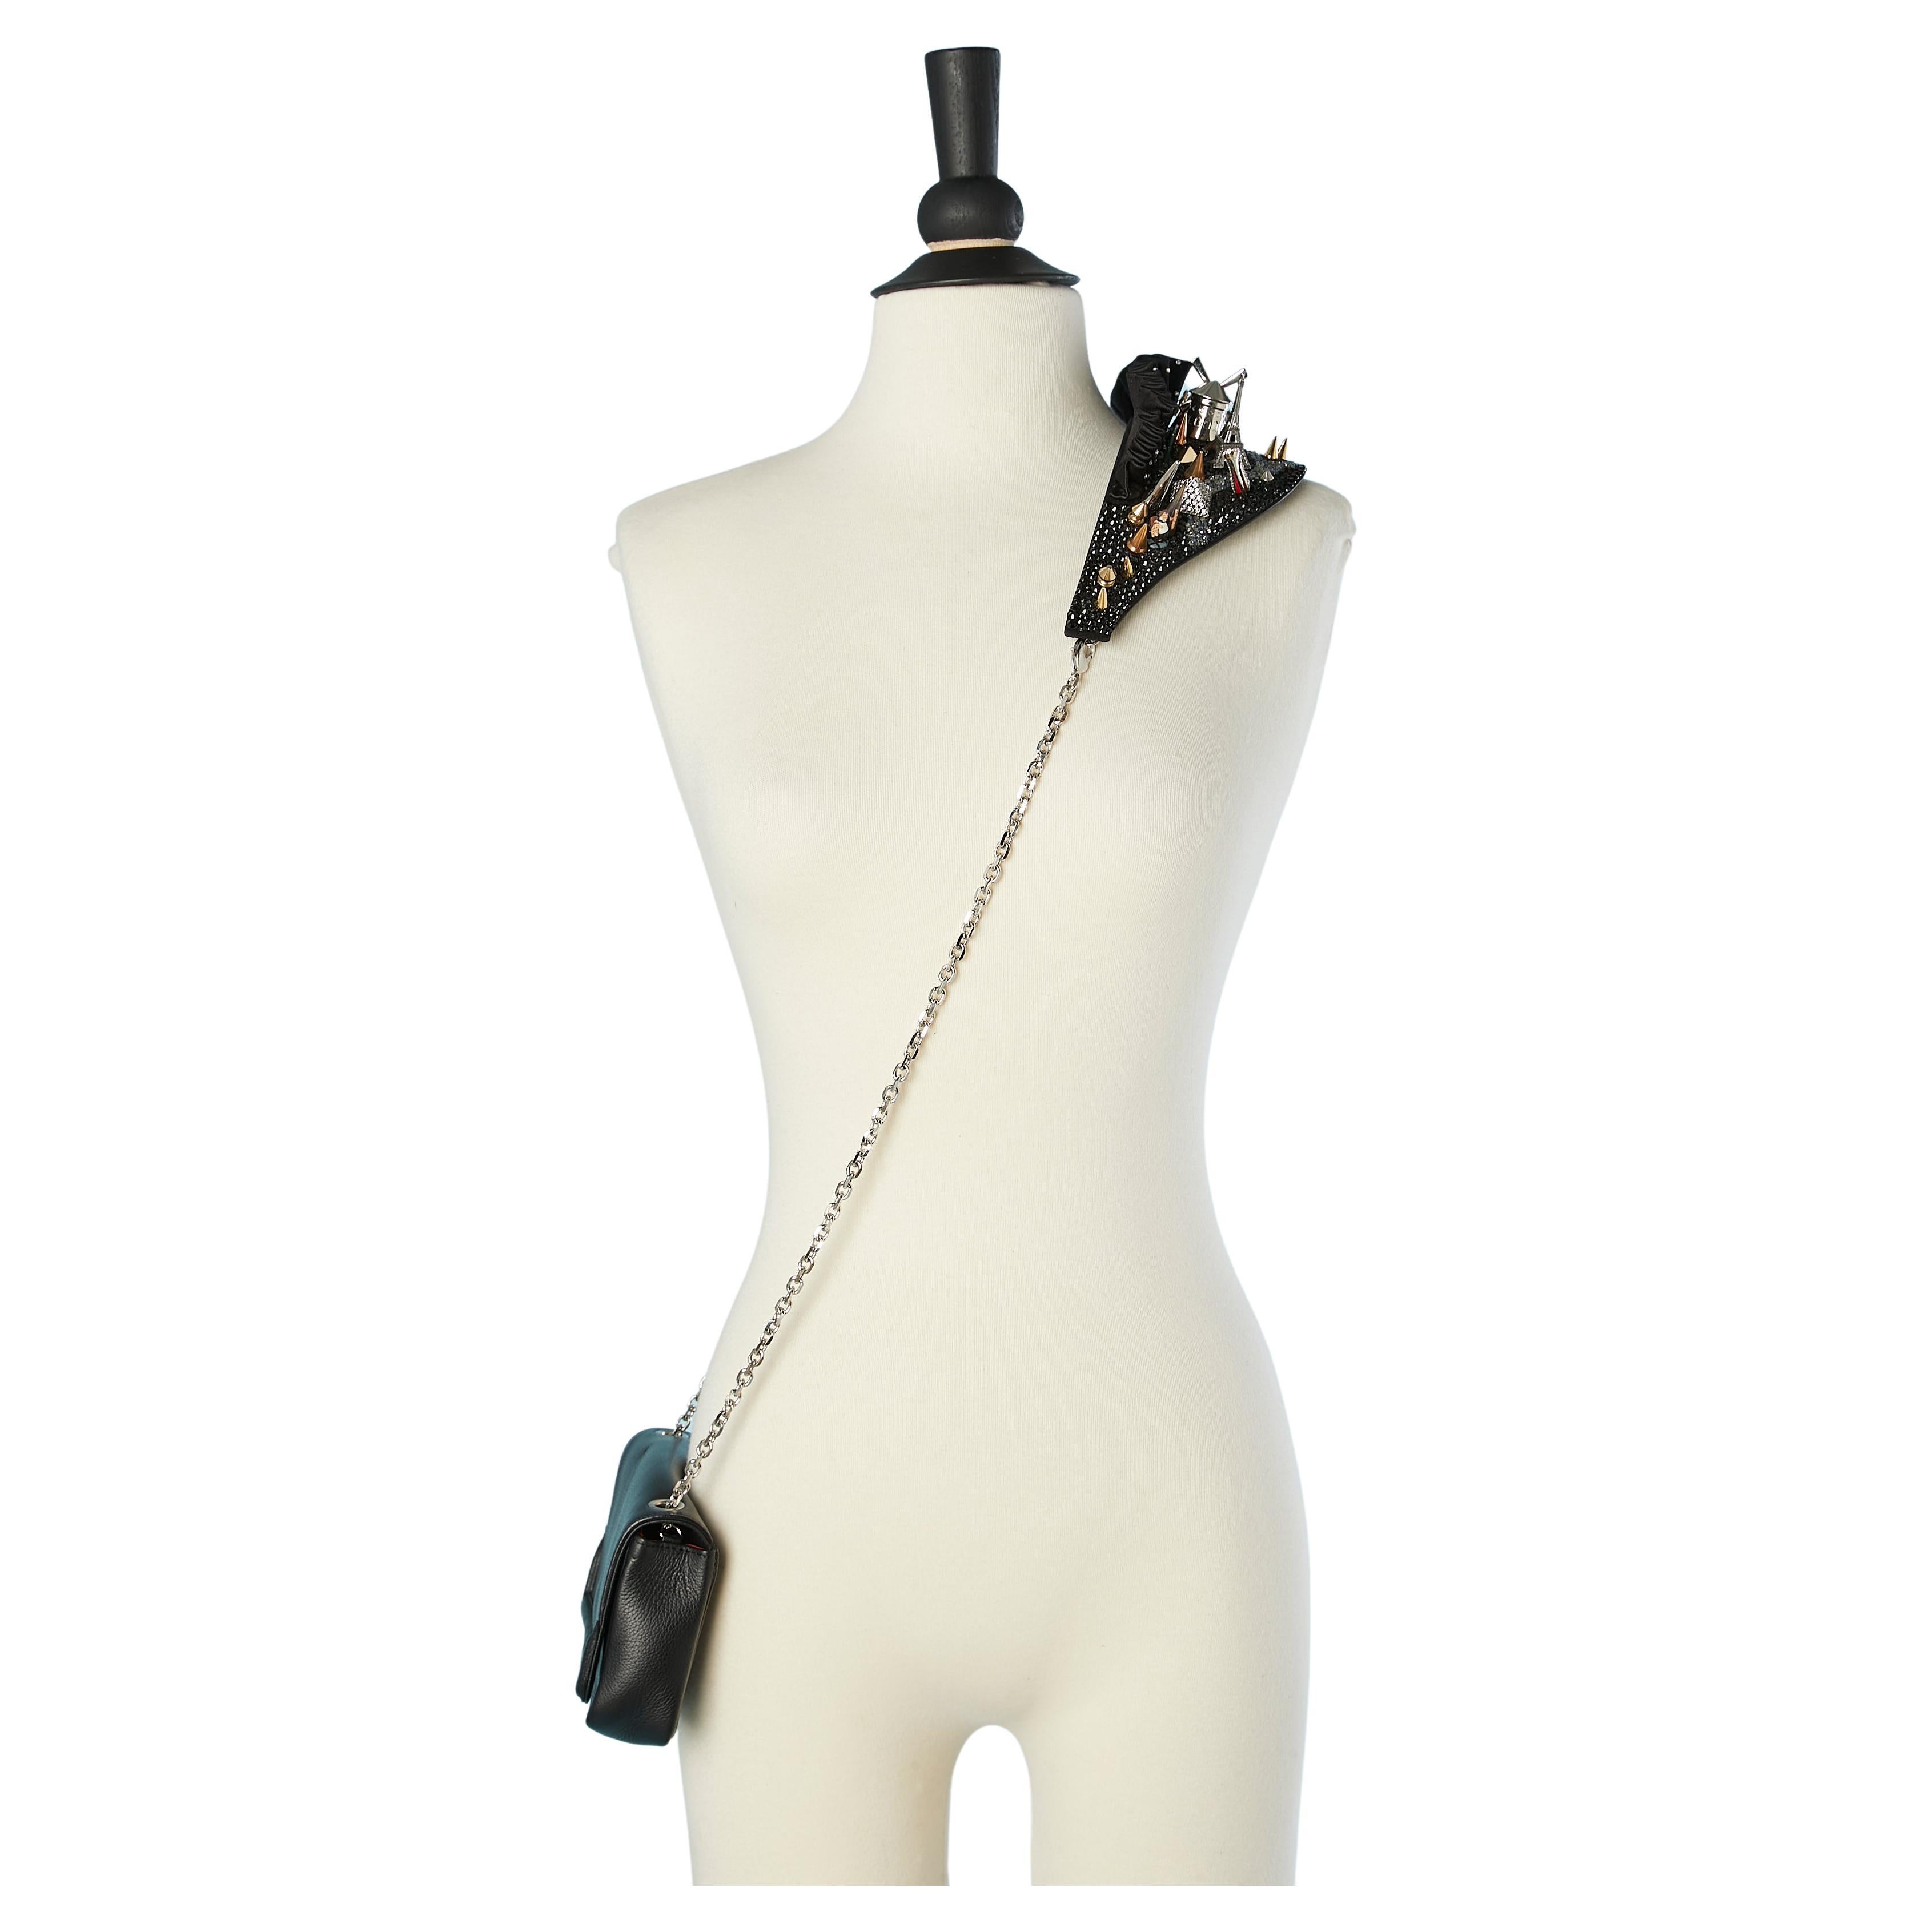 Artemis leather evening bag with Paris site-sight shoulder strap C. Louboutin  For Sale